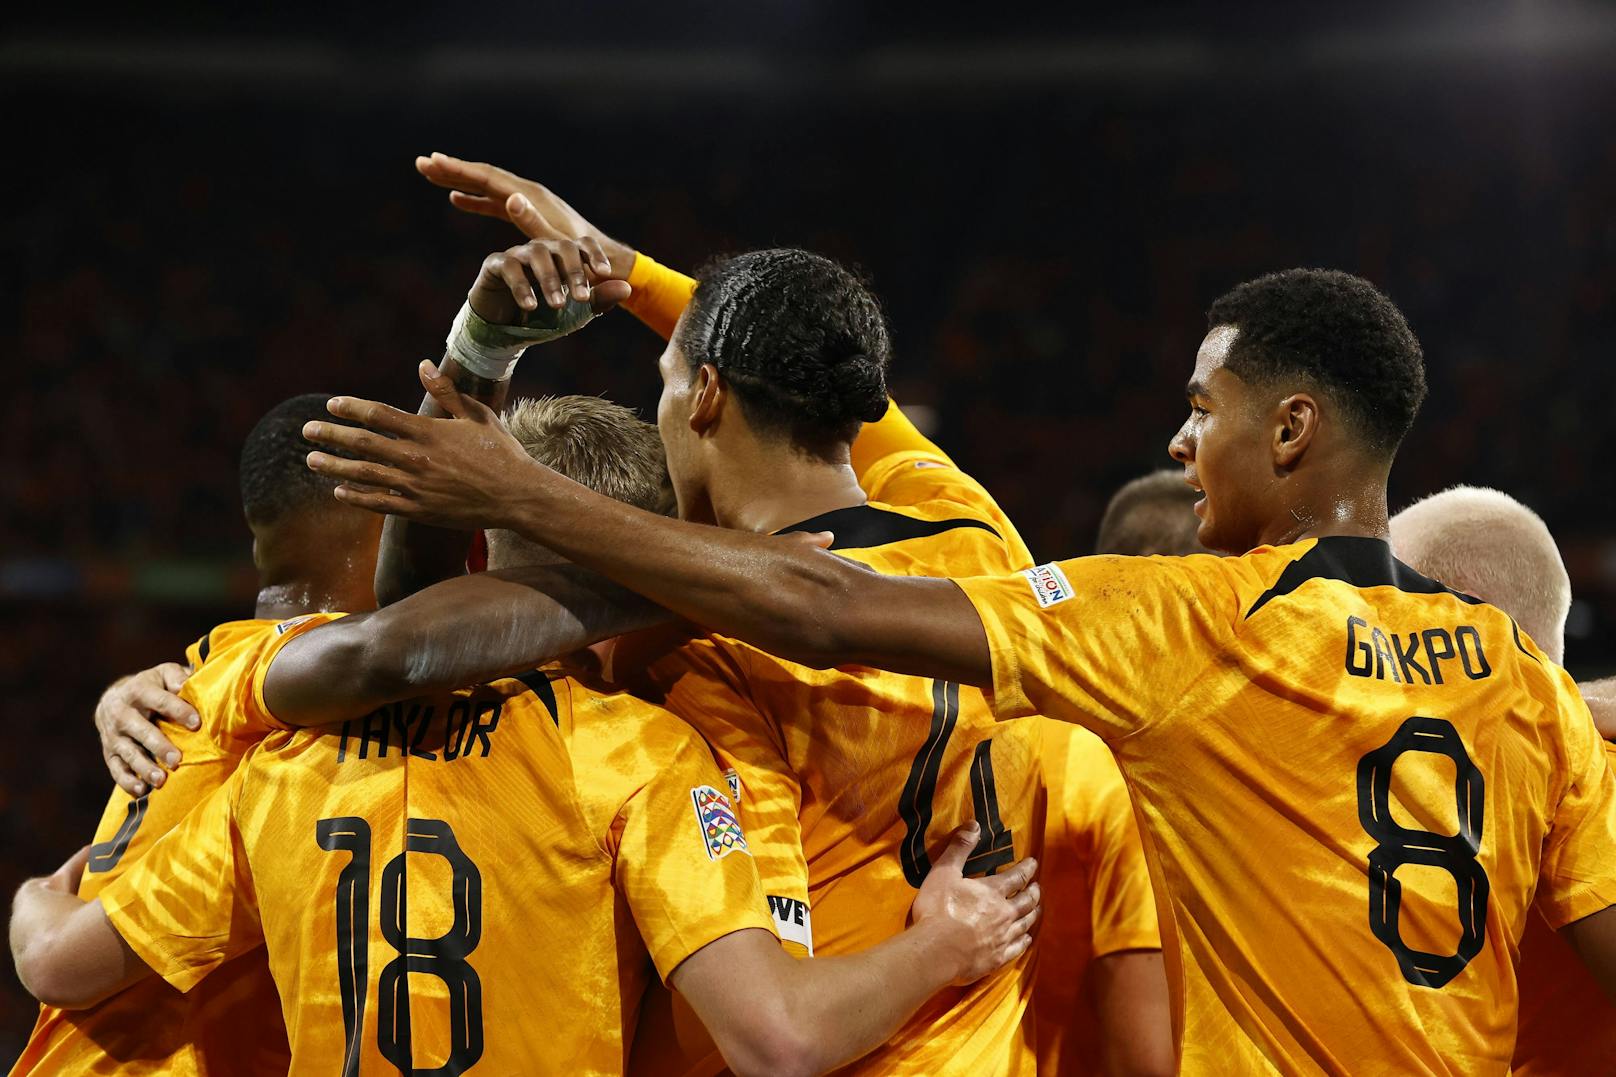 Auf allen Positionen top besetzt – die Niederlande zeigt wieder aufregenden Fußball, qualifizierte sich für das Final-4-Turnier der Nations League. Die Trikots in Gold-Orange sollen ein Vorzeichen sein …